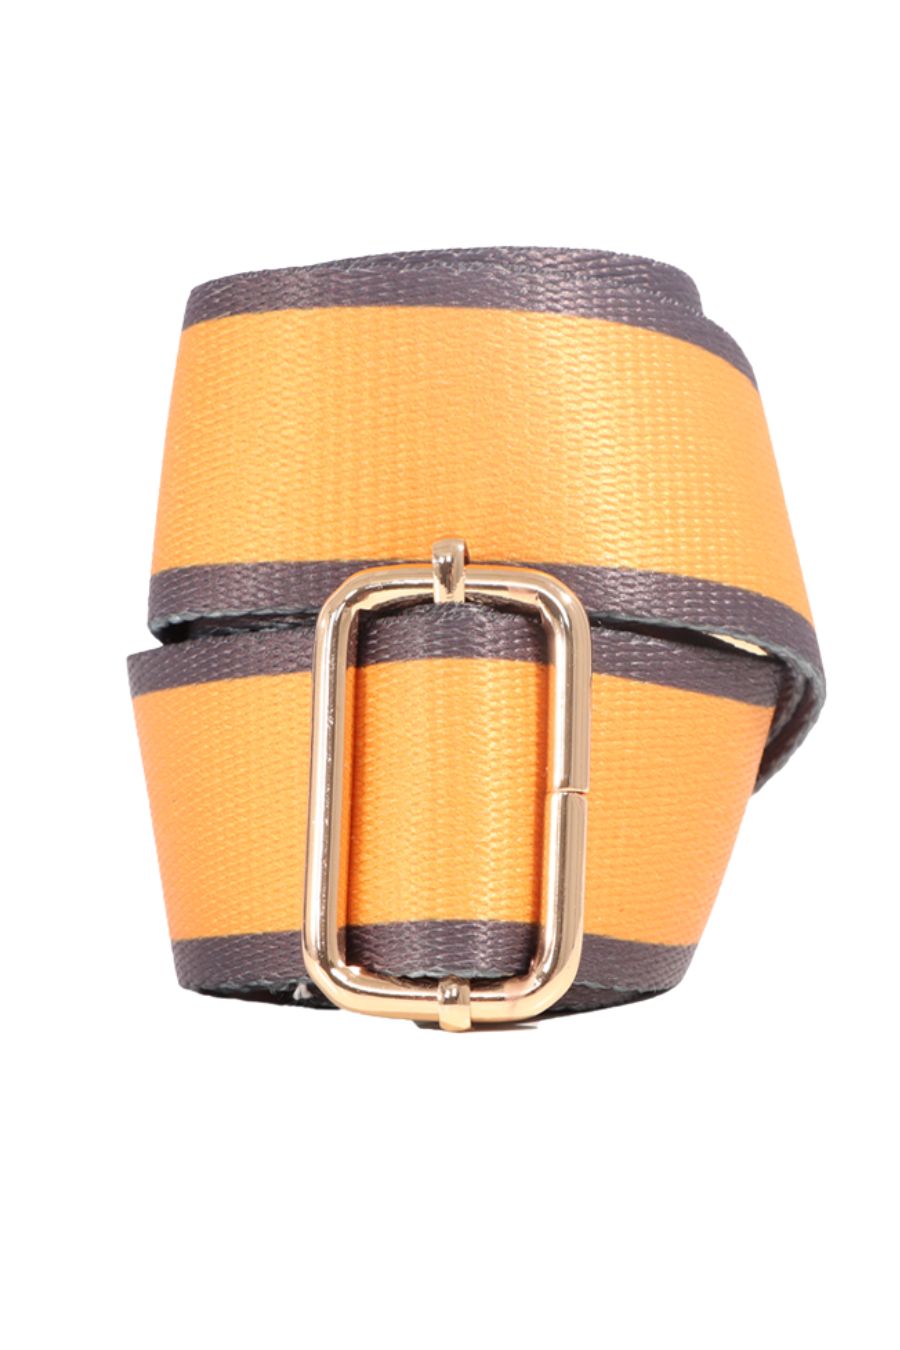 Yellow & Charcoal Bag Strap - Allison's Boutique